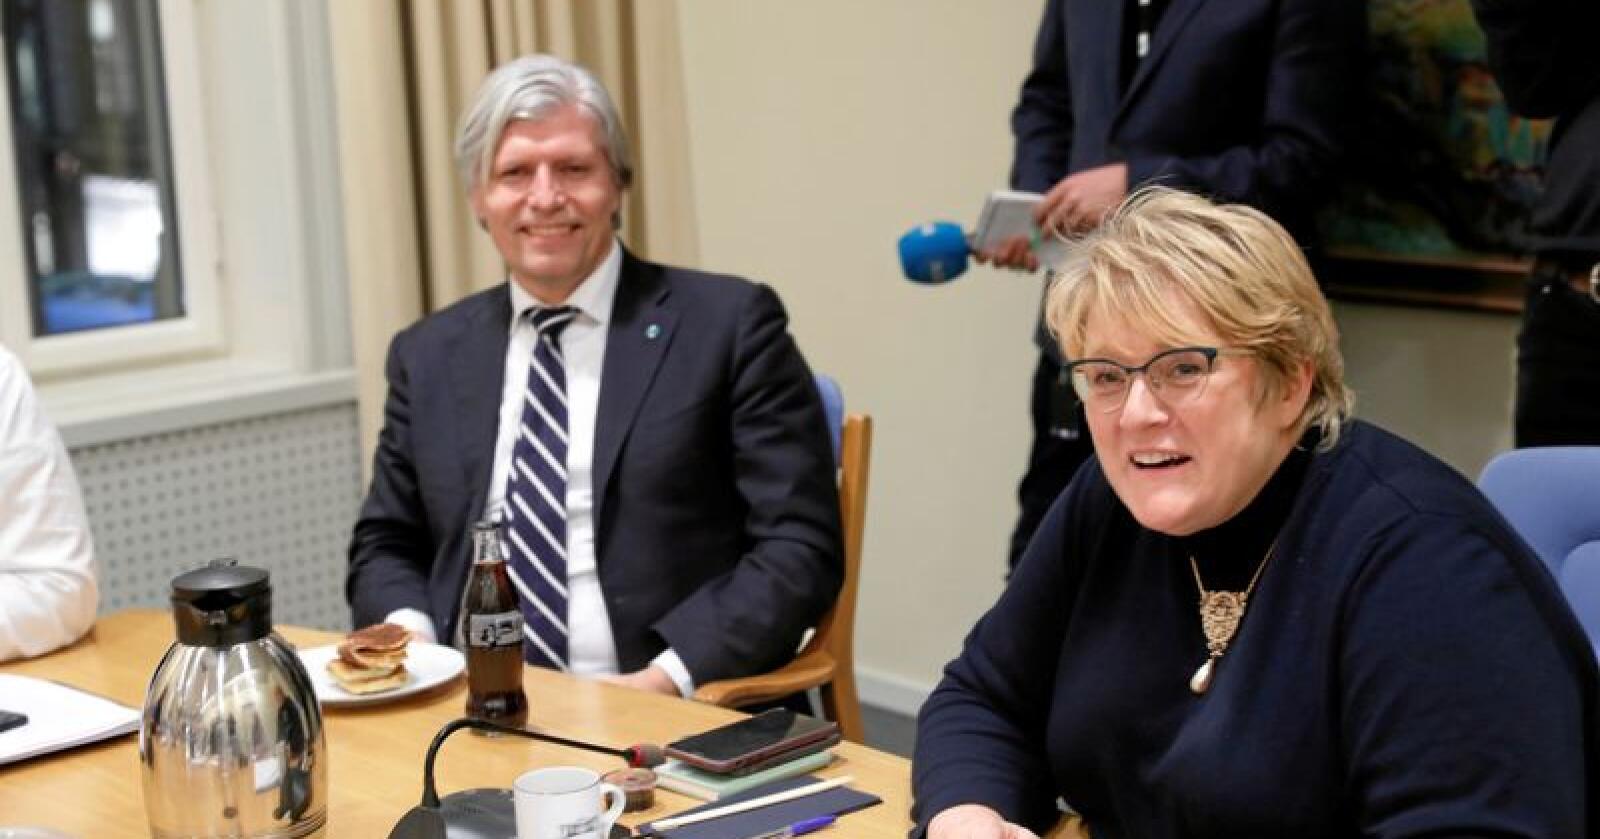 Får kritikk: Venstres nestleder Ola Elvestuen og leder Trine Skei Grande. Foto: Terje Bendiksby / NTB Scanpix